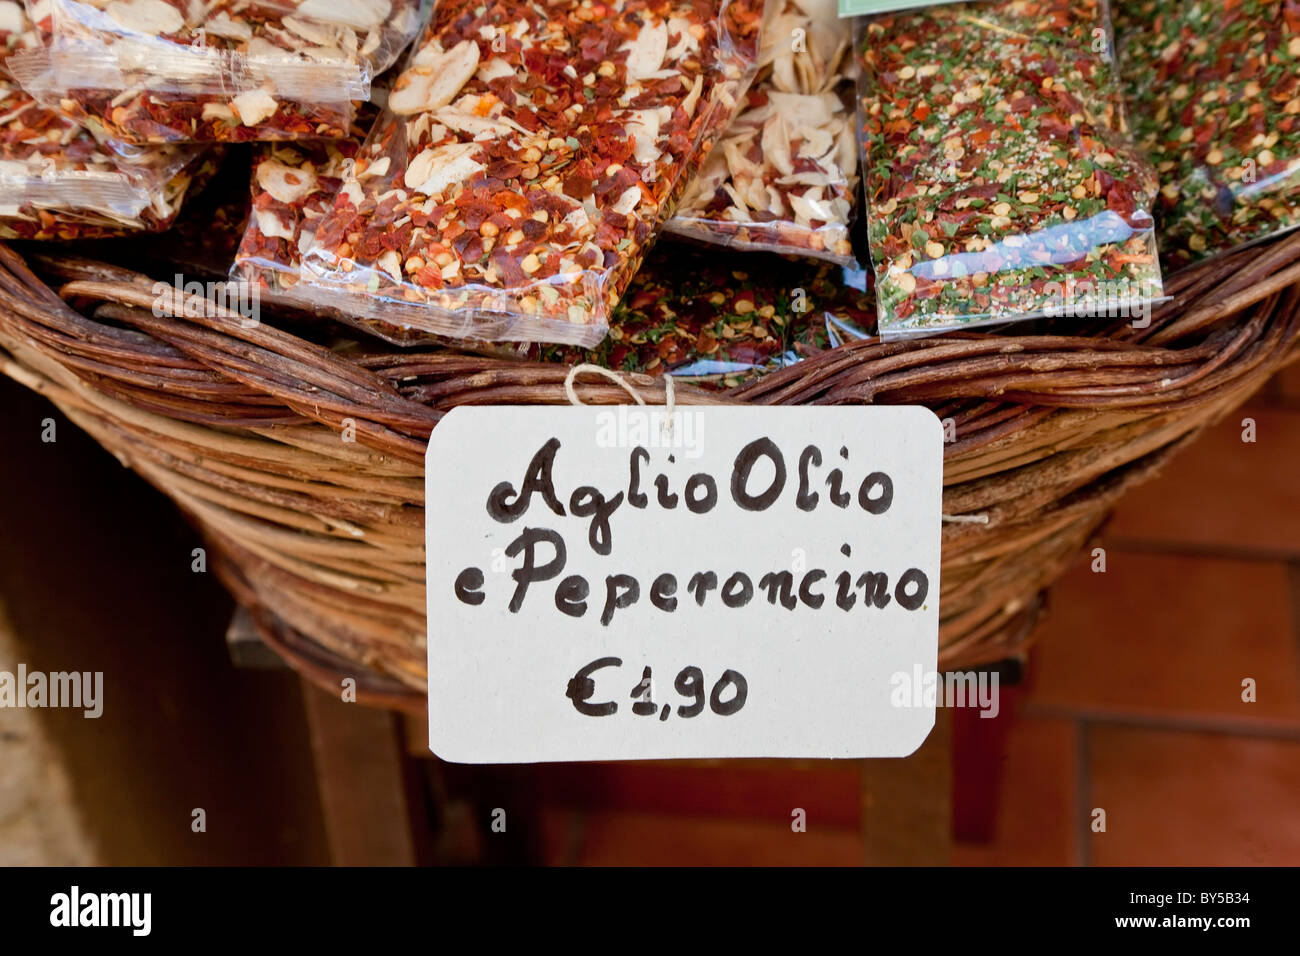 Peperoncino chili copos secos para Aglio Olio salsa para pastas, Pienza, Toscana, Italia Foto de stock